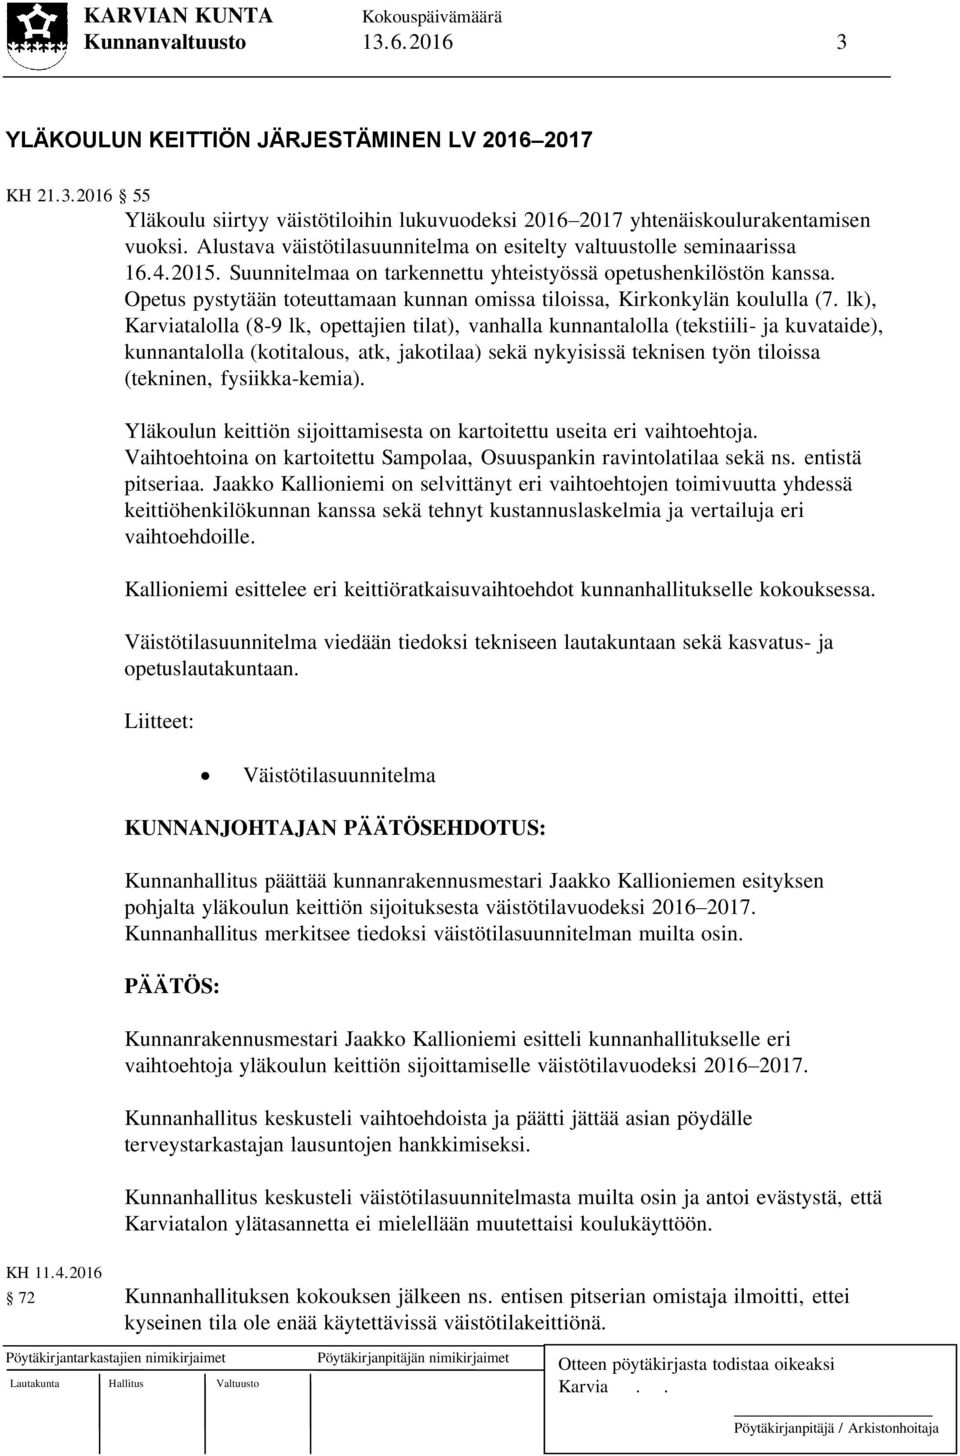 Opetus pystytään toteuttamaan kunnan omissa tiloissa, Kirkonkylän koululla (7.